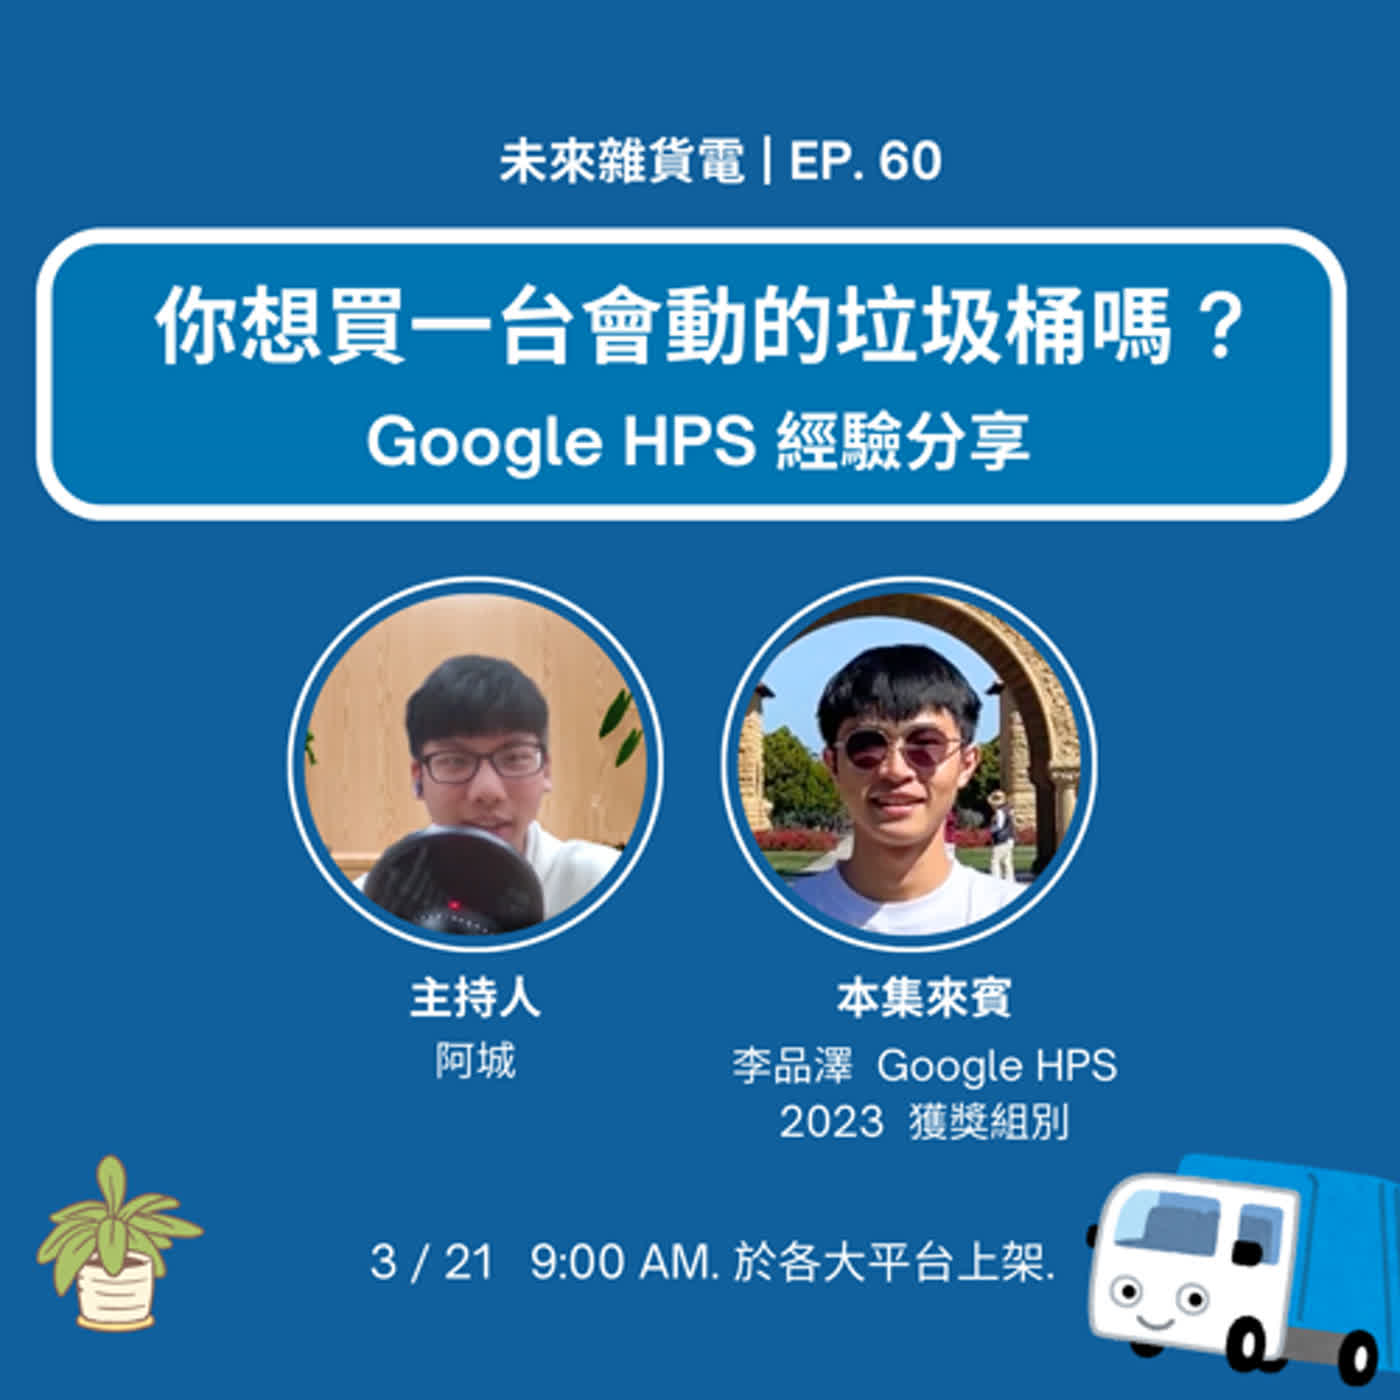 EP60 | 你想買一台會動的垃圾桶嗎? | Google HPS經驗分享 feat.李品澤